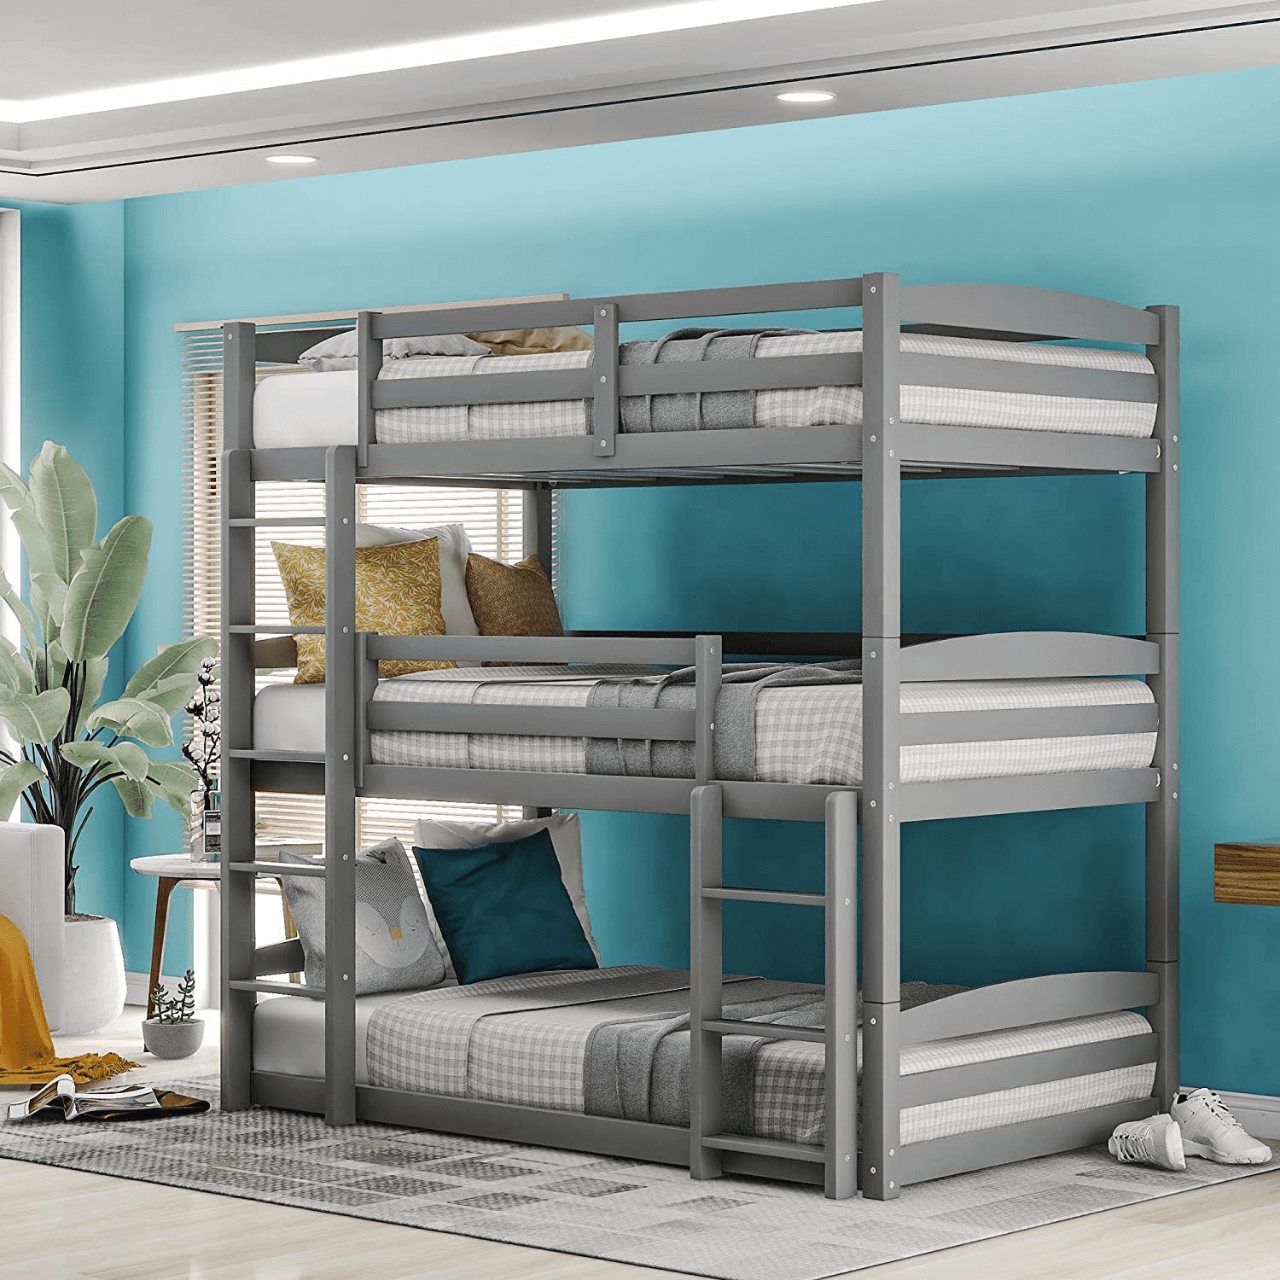 Mẫu giường có 3 tầng xếp chồng lên nhau giúp tiết kiệm diện tích căn phòng